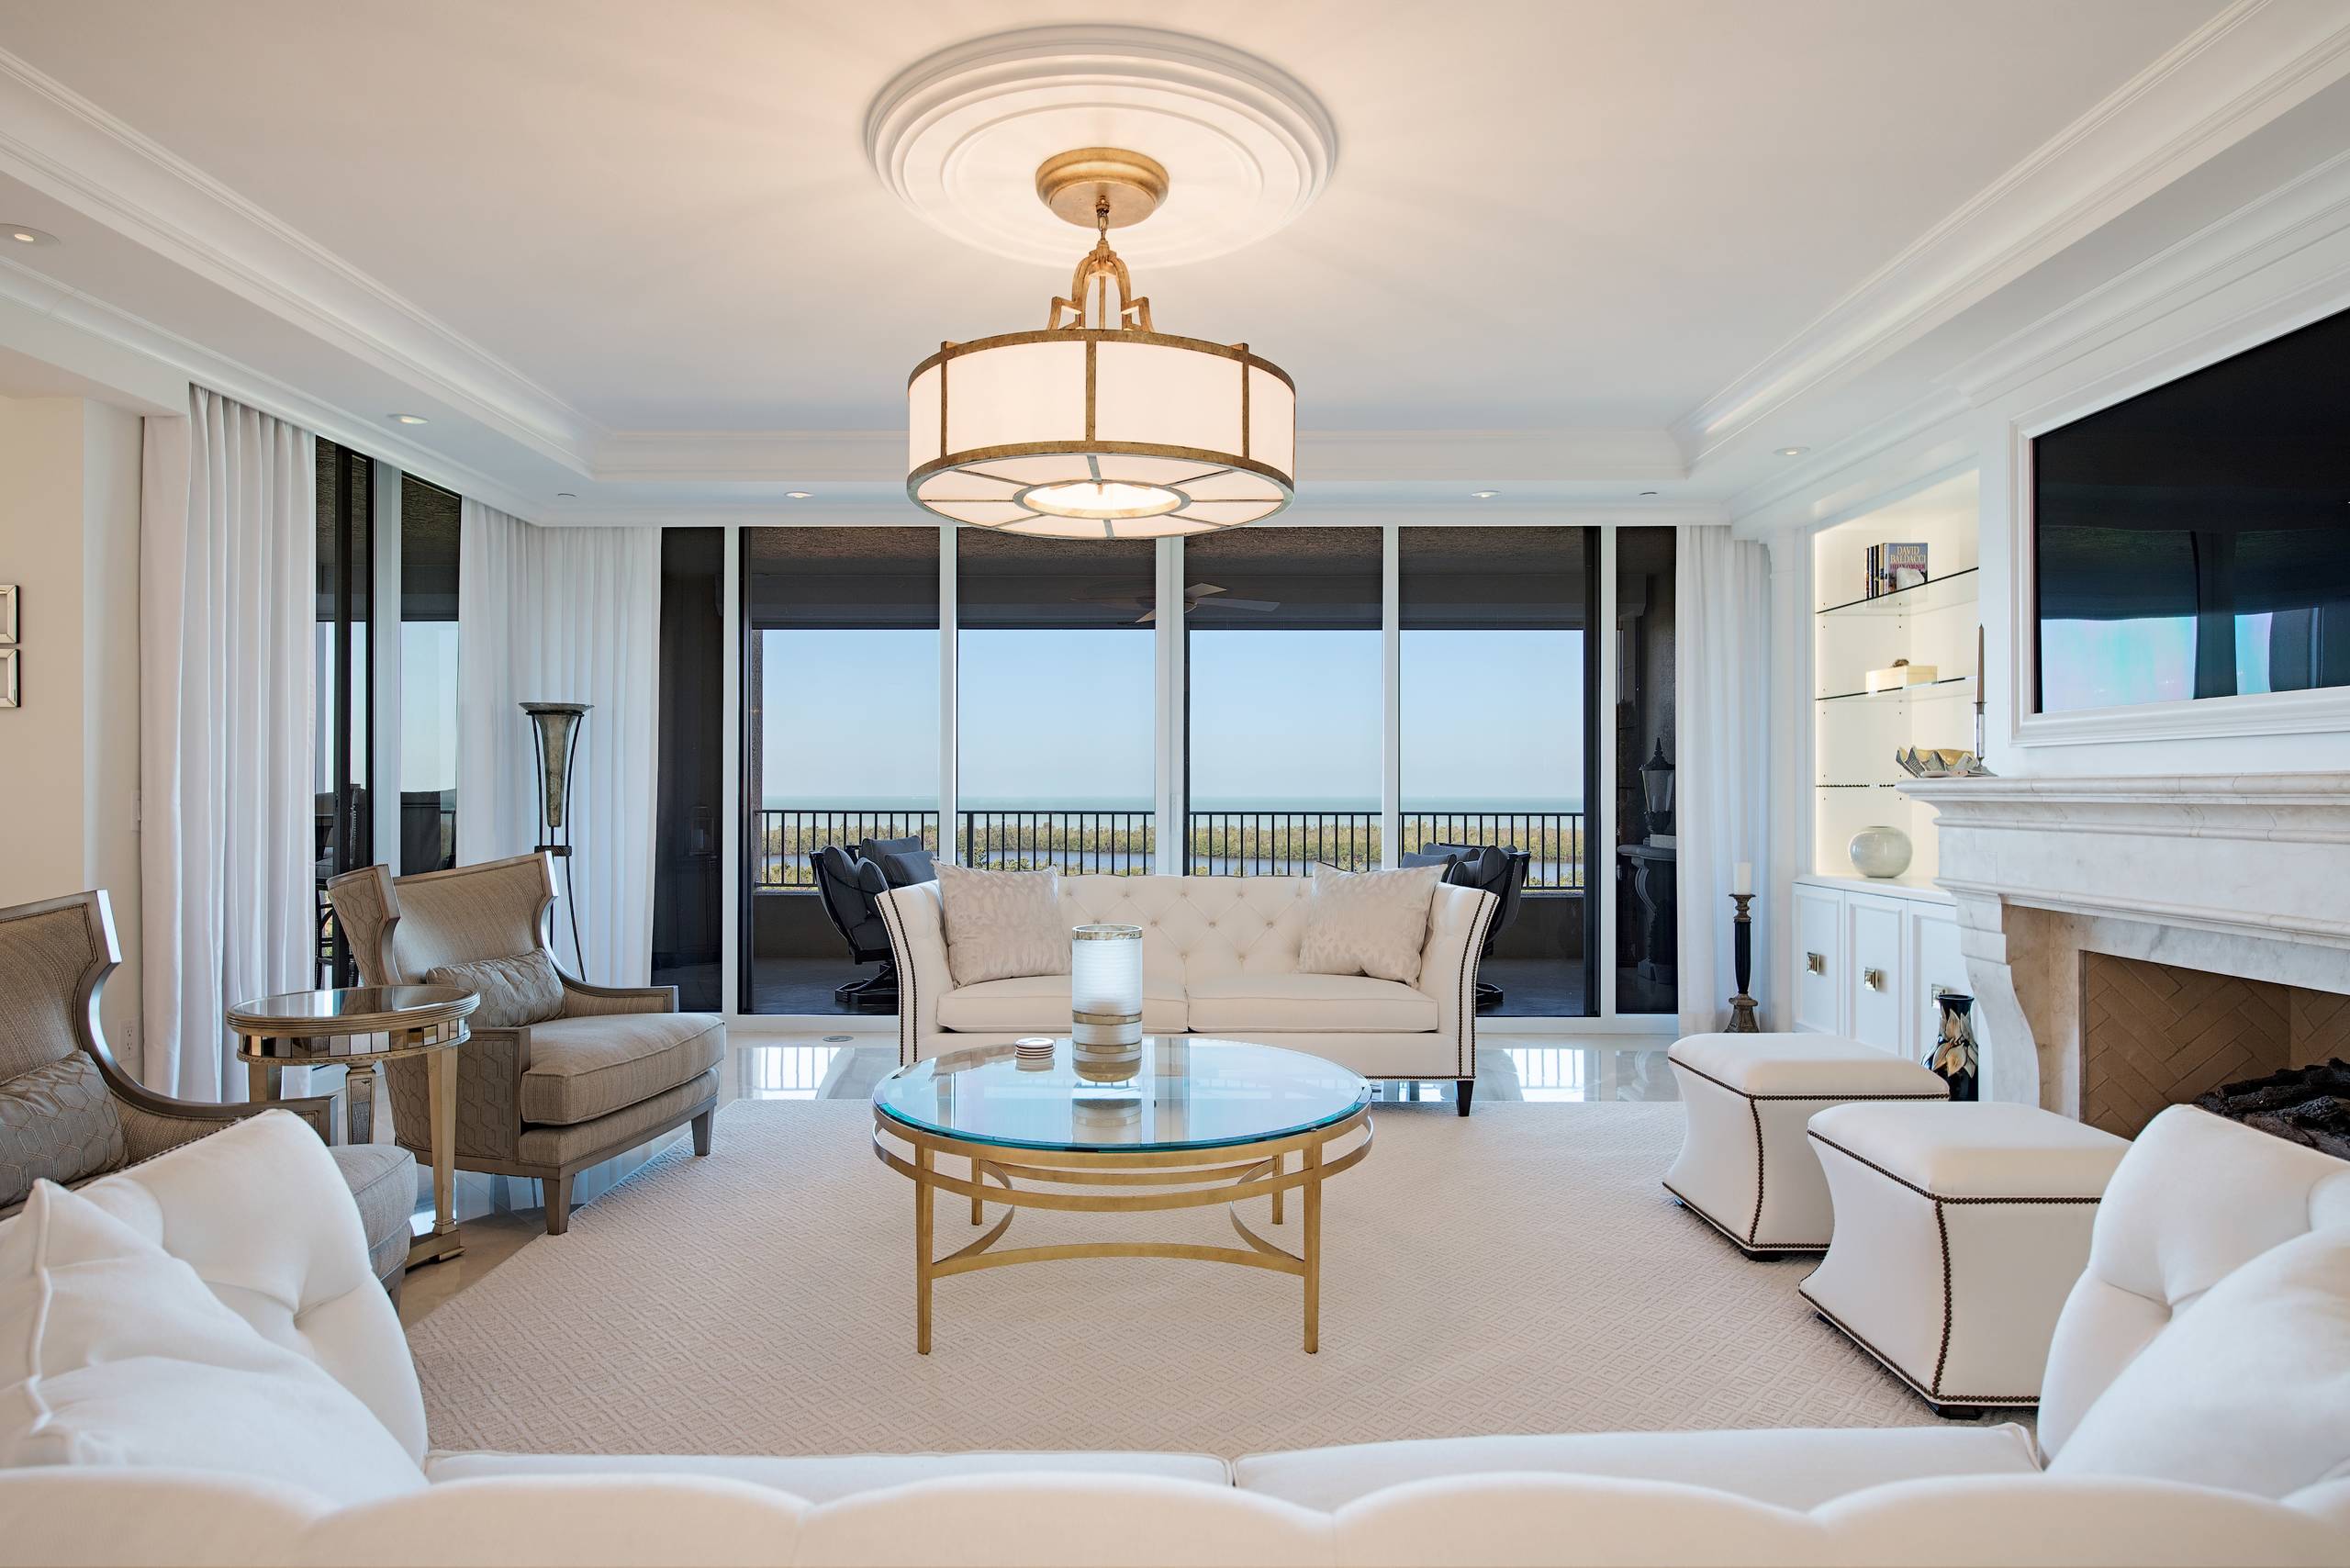 Certified Luxury Builders-41 West-Naples-Pelican Bay-Cap Ferrat-High-rise Condo